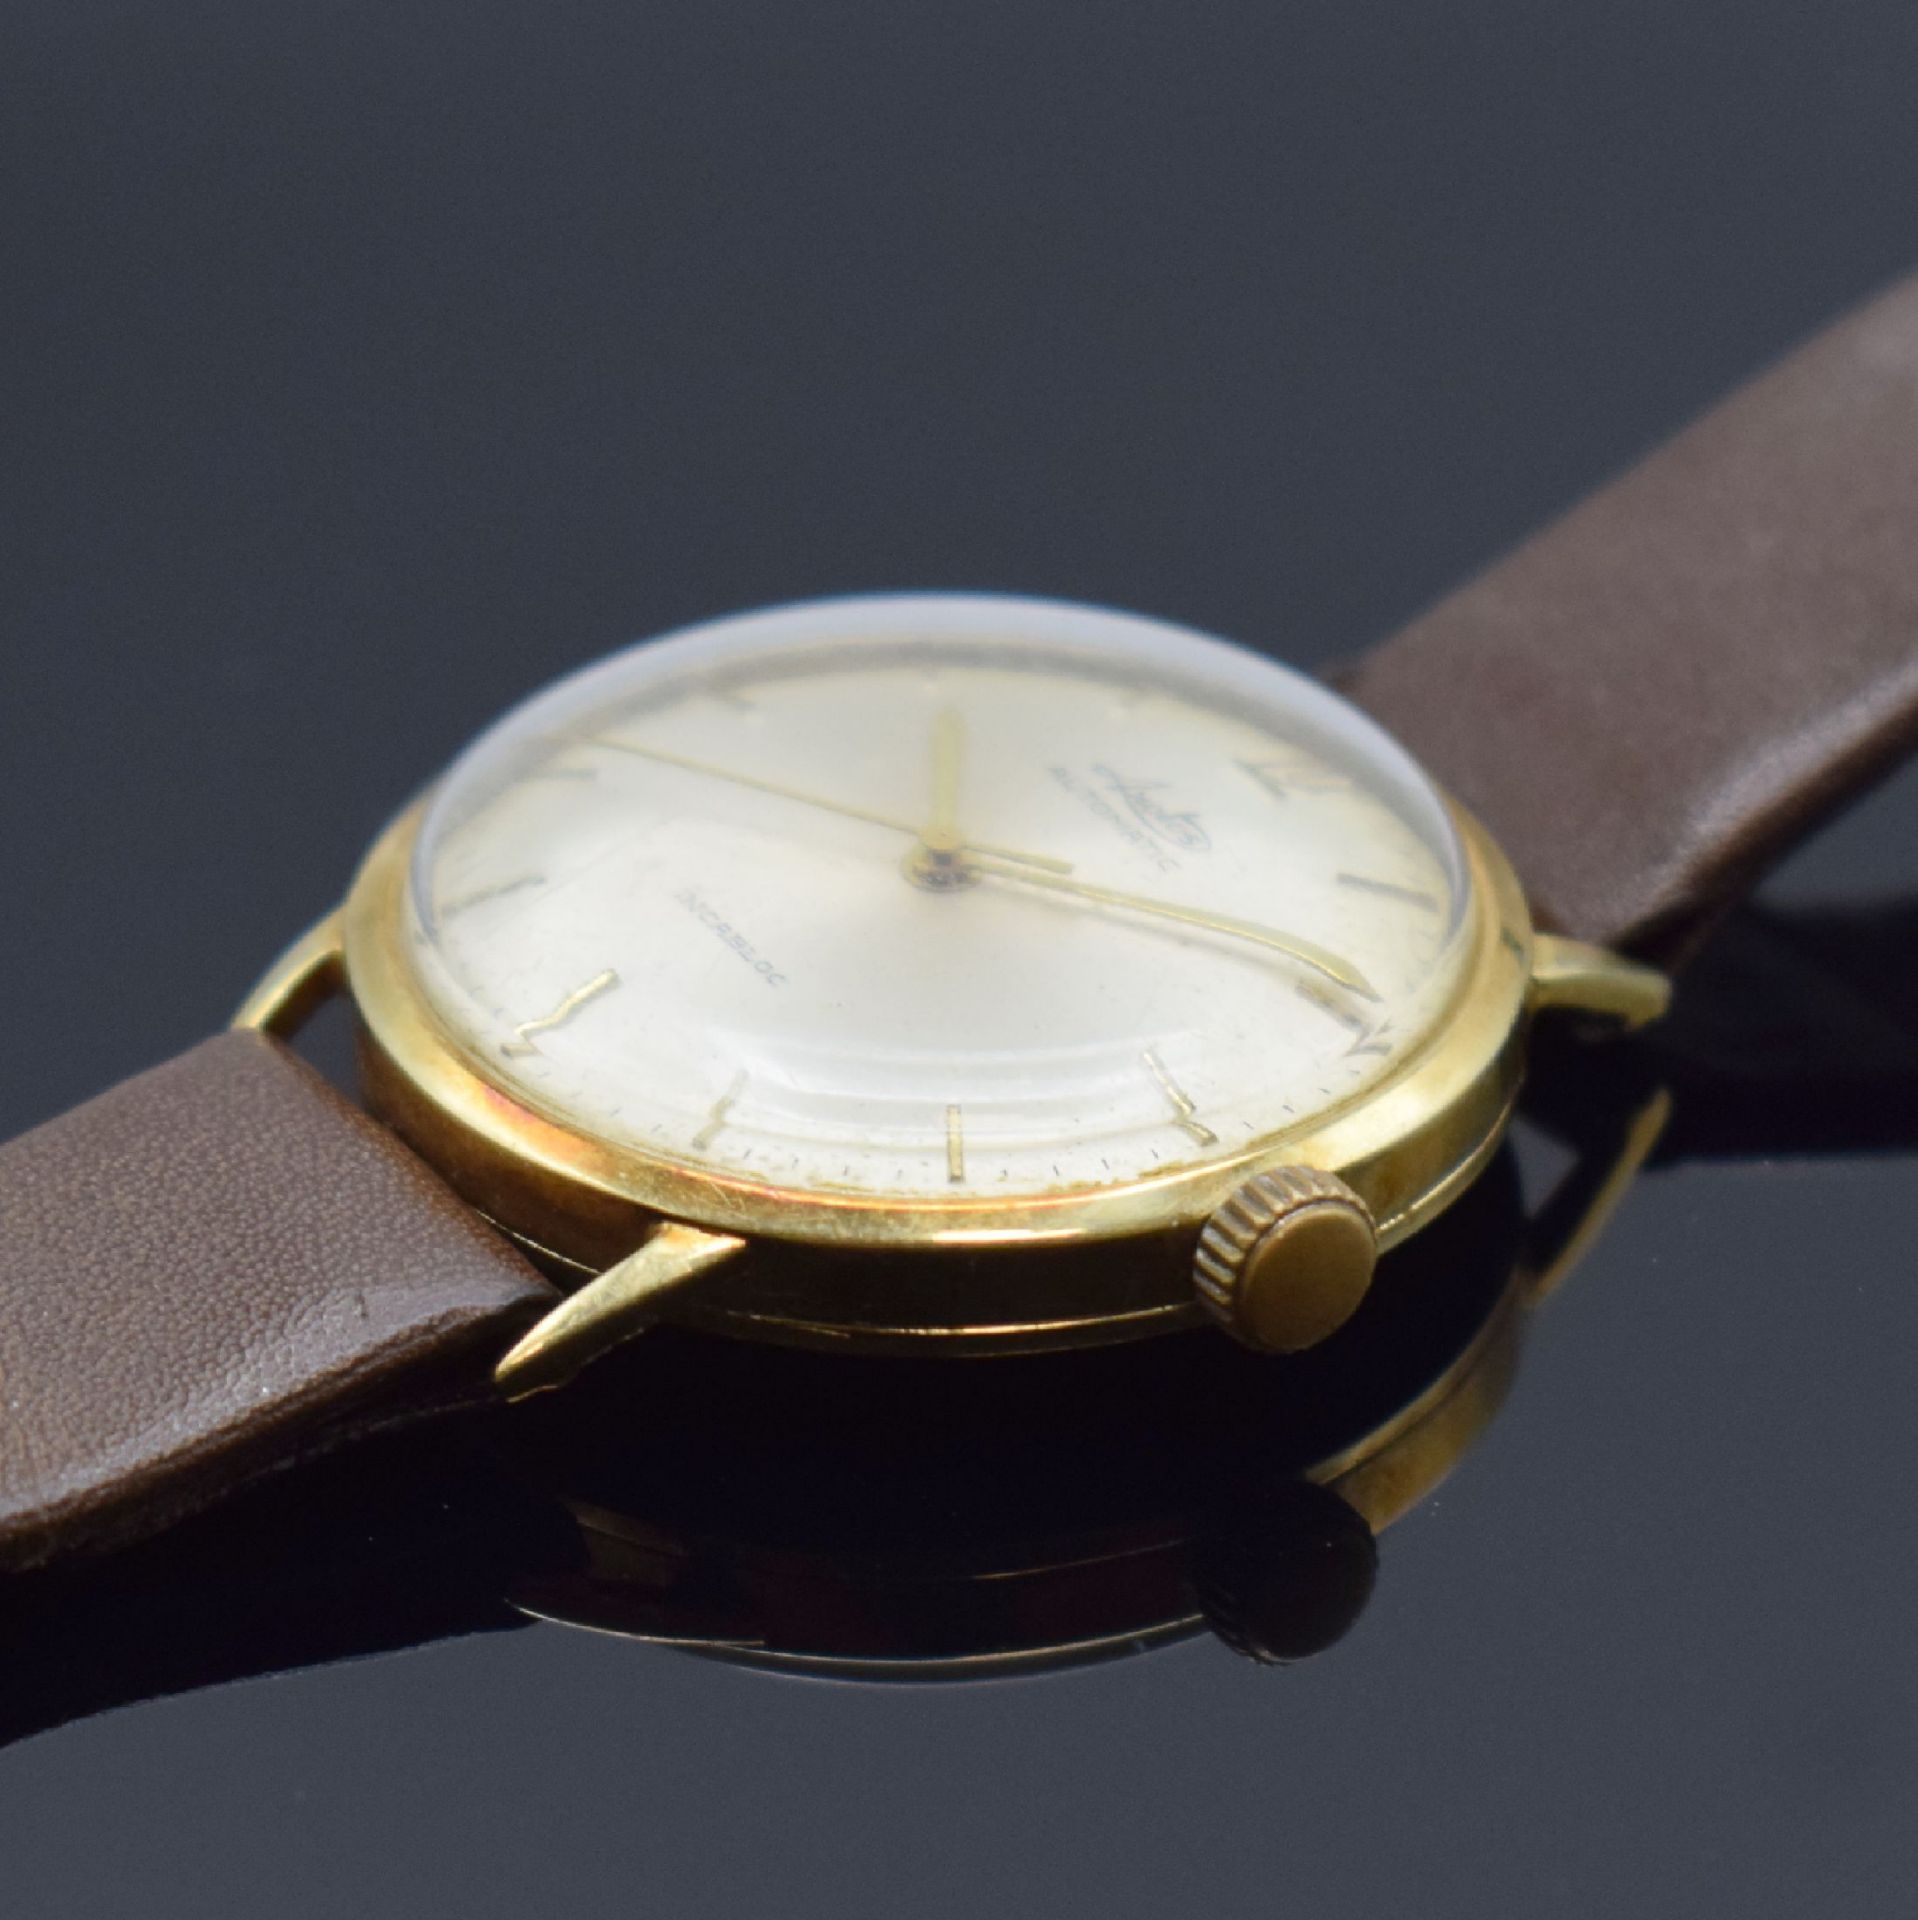 ARCTOS Armbanduhr in GG 585/000, Automatik, Schweiz um - Bild 3 aus 6